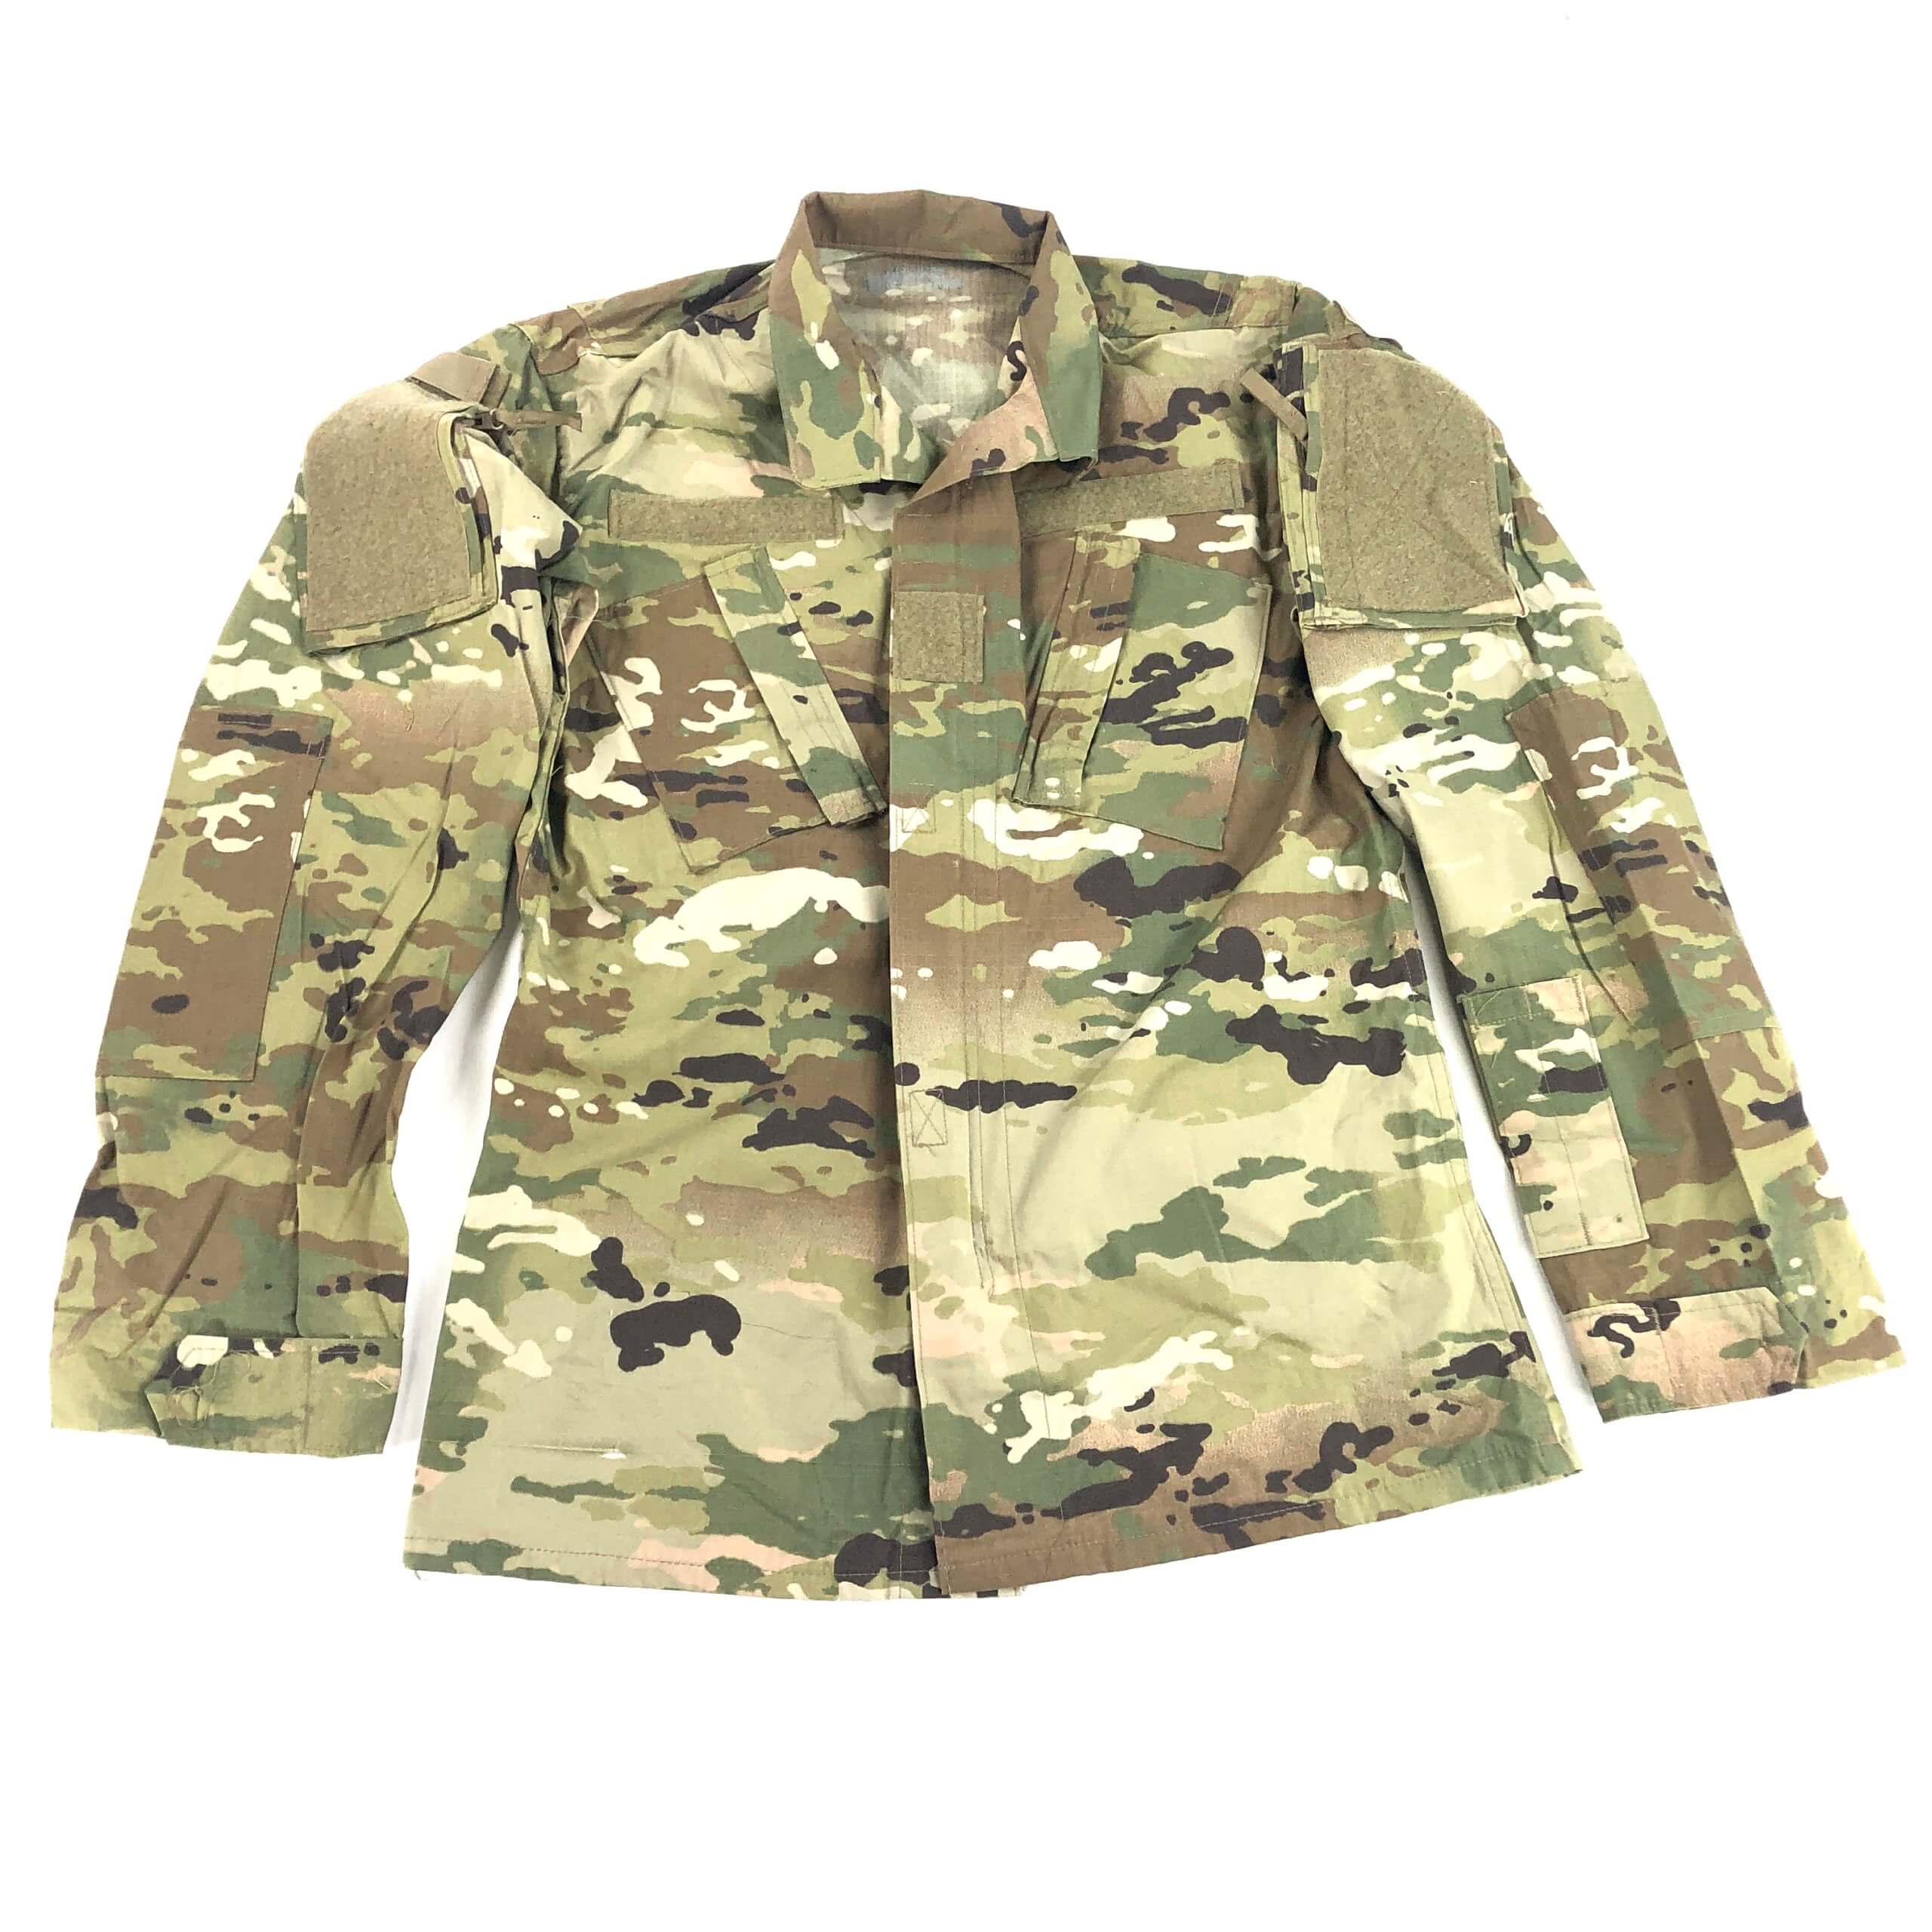 Used USGI Genuine Multicam OCP Army FRACU Uniform Top Shirt USA Made Medium Long 